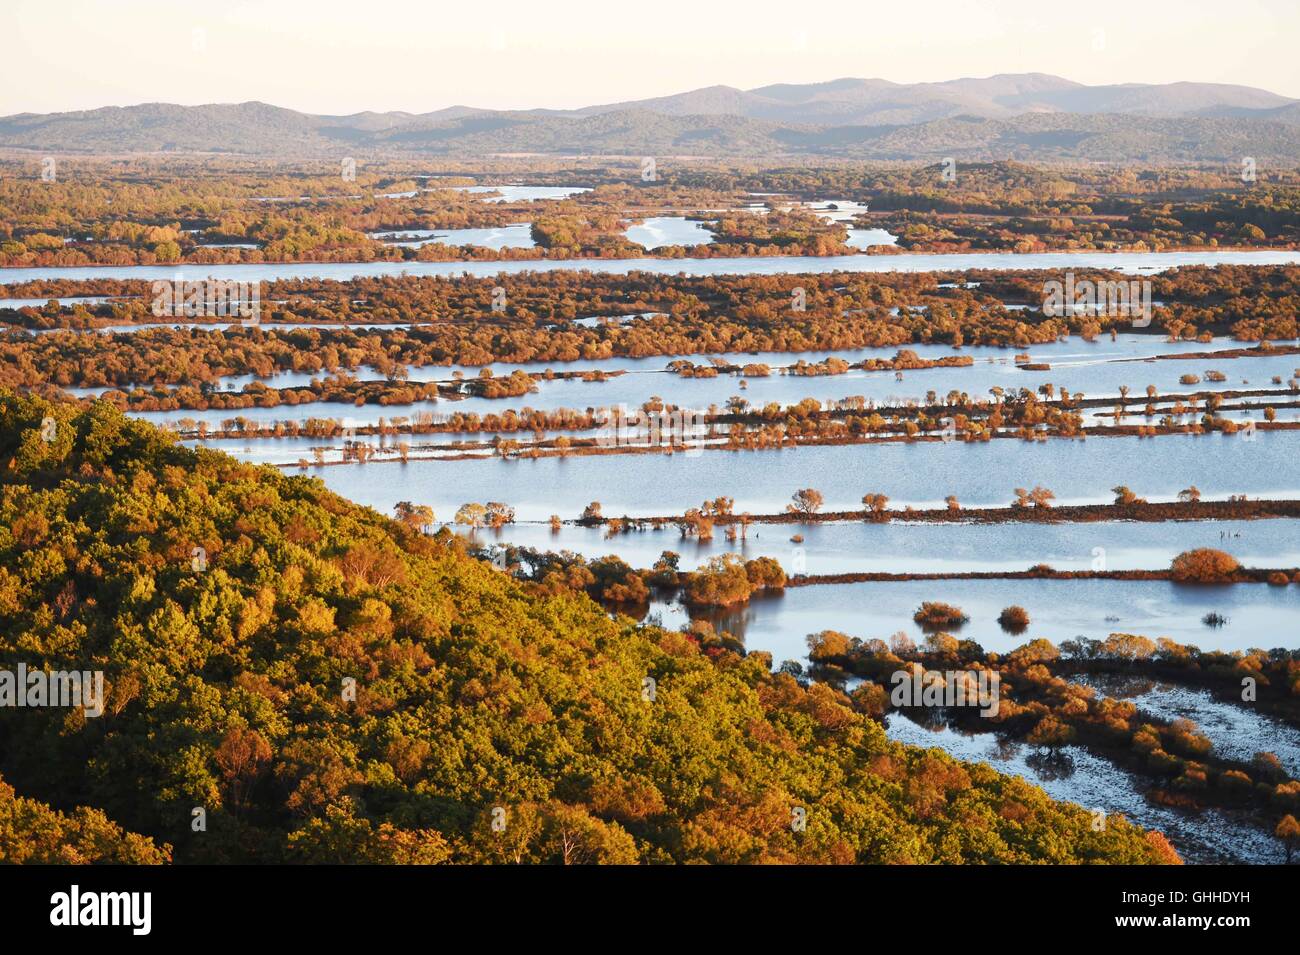 Hulin. 28 Sep, 2016. Photo prise le 28 septembre 2016 présente le paysage de la zone humide de l'Île Zhenbao Hulin, au nord-est de la province de la Chine. Les 29 275 hectares de zone humide a été désignée comme zone humide d'importance internationale par la Convention de Ramsar en 2011 pour son importance vitale, car c'est un marais unique pour la diversité biologique. © Wang Jianwei/Xinhua/Alamy Live News Banque D'Images